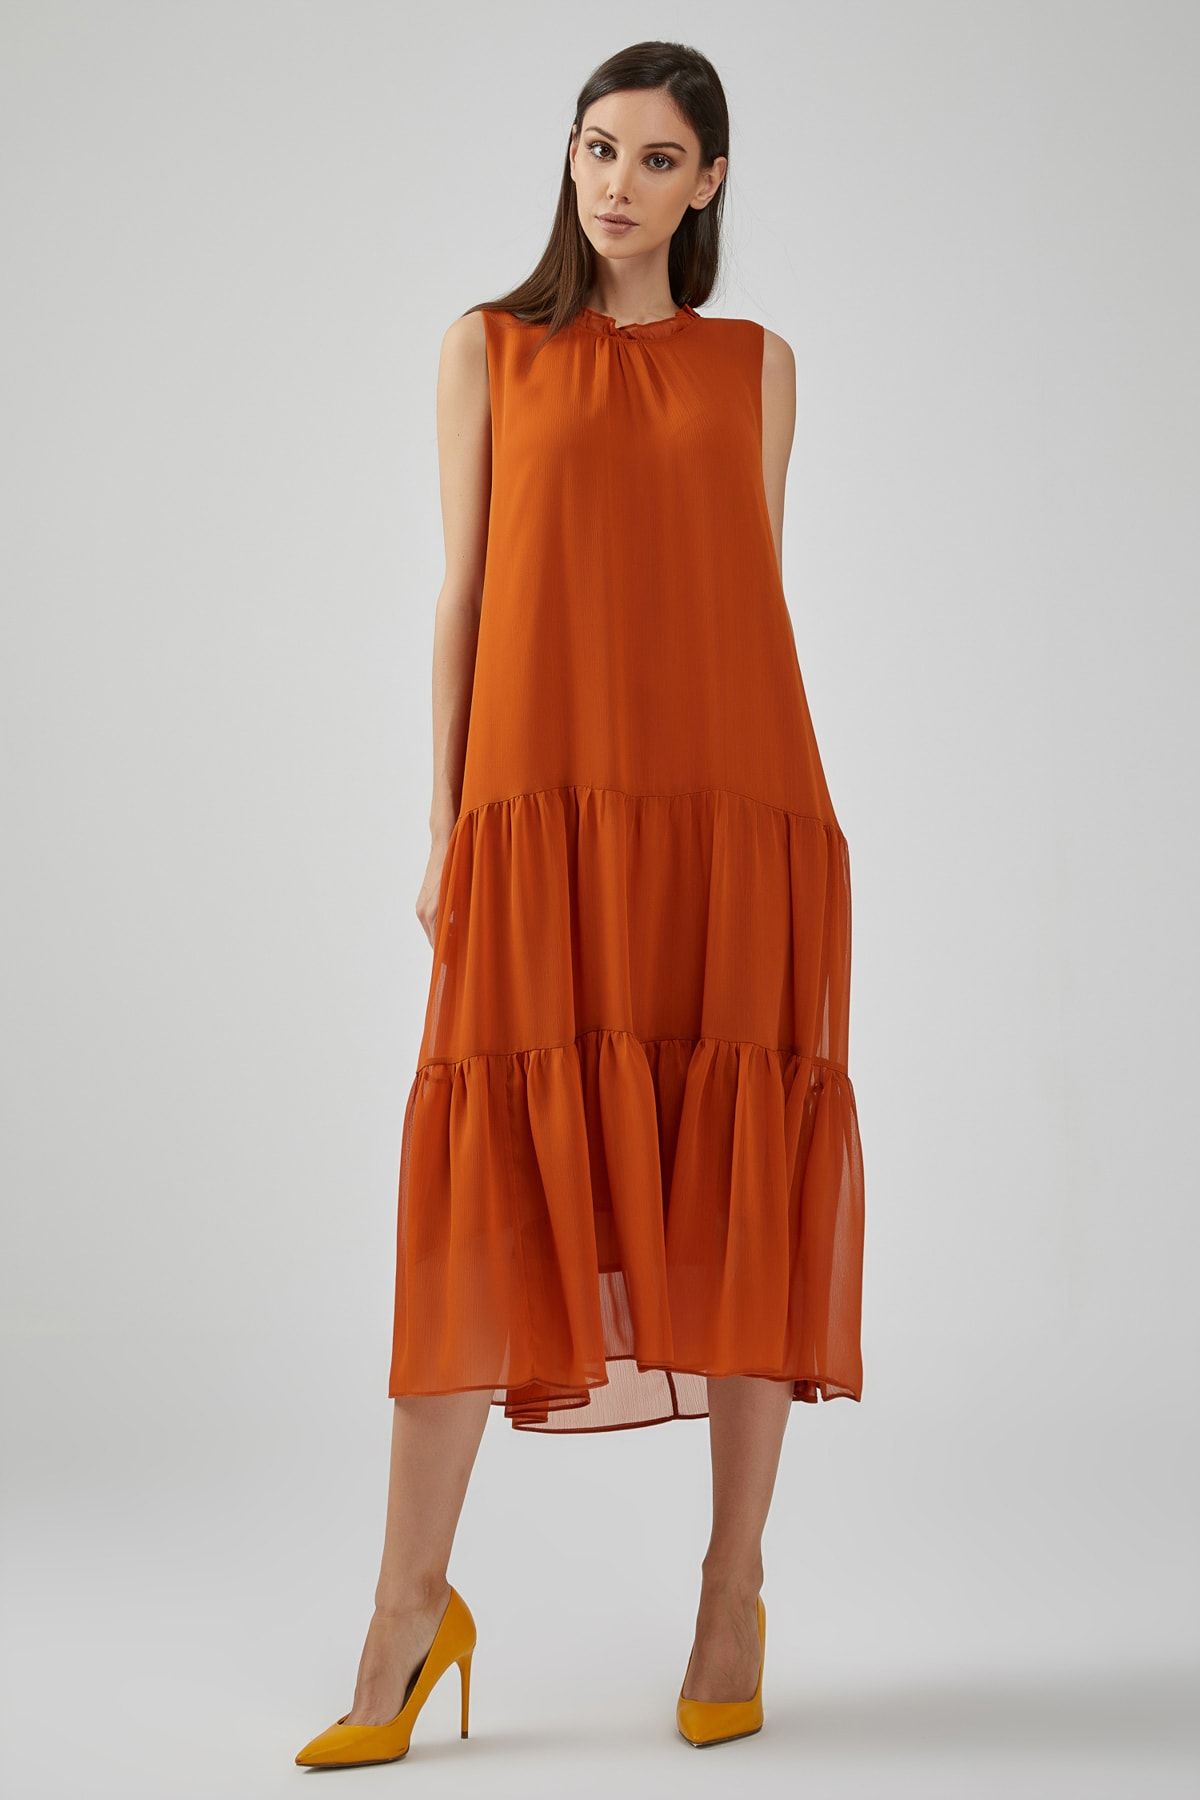 Gusto Kadın Turuncu Yakası Fırfırlı Etek Kısmı Büzgülü Astarlı Şifon Elbise